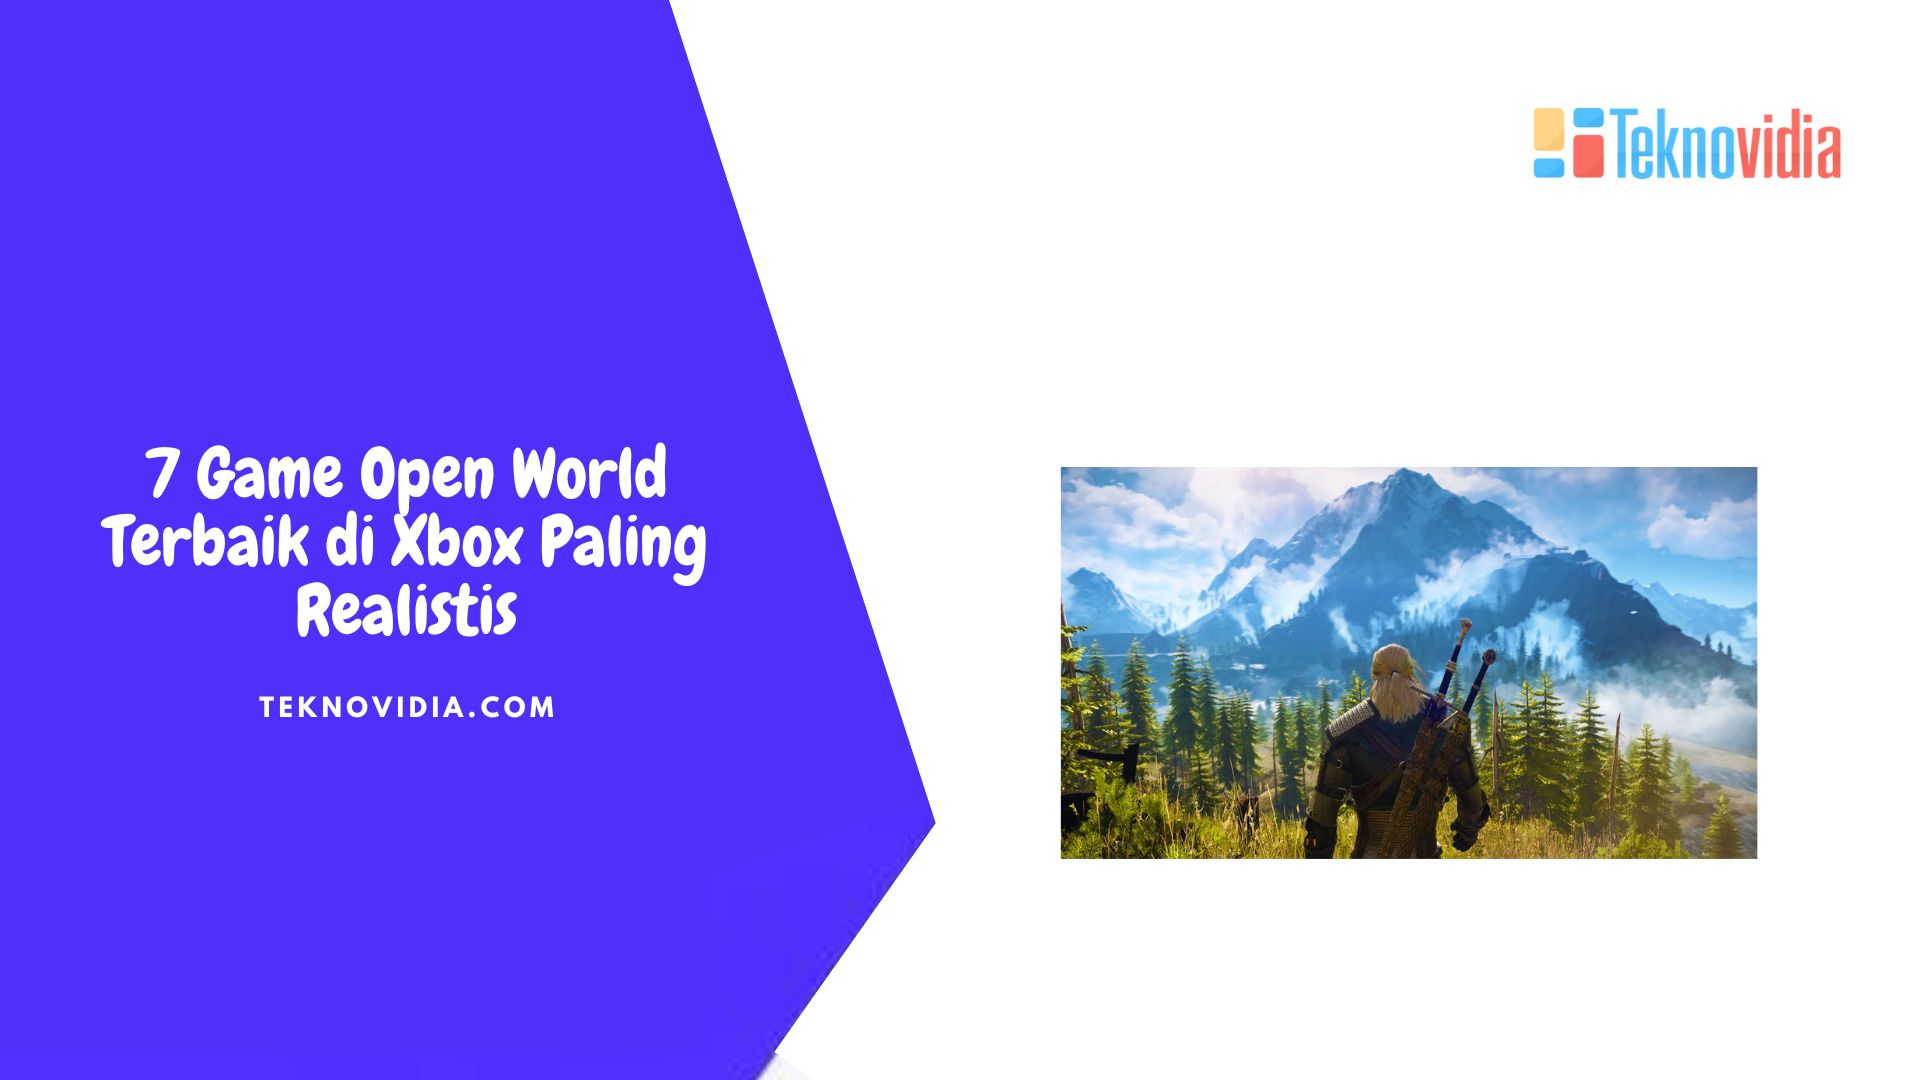 7 Game Open World Terbaik di Xbox Paling Realistis - Teknovidia